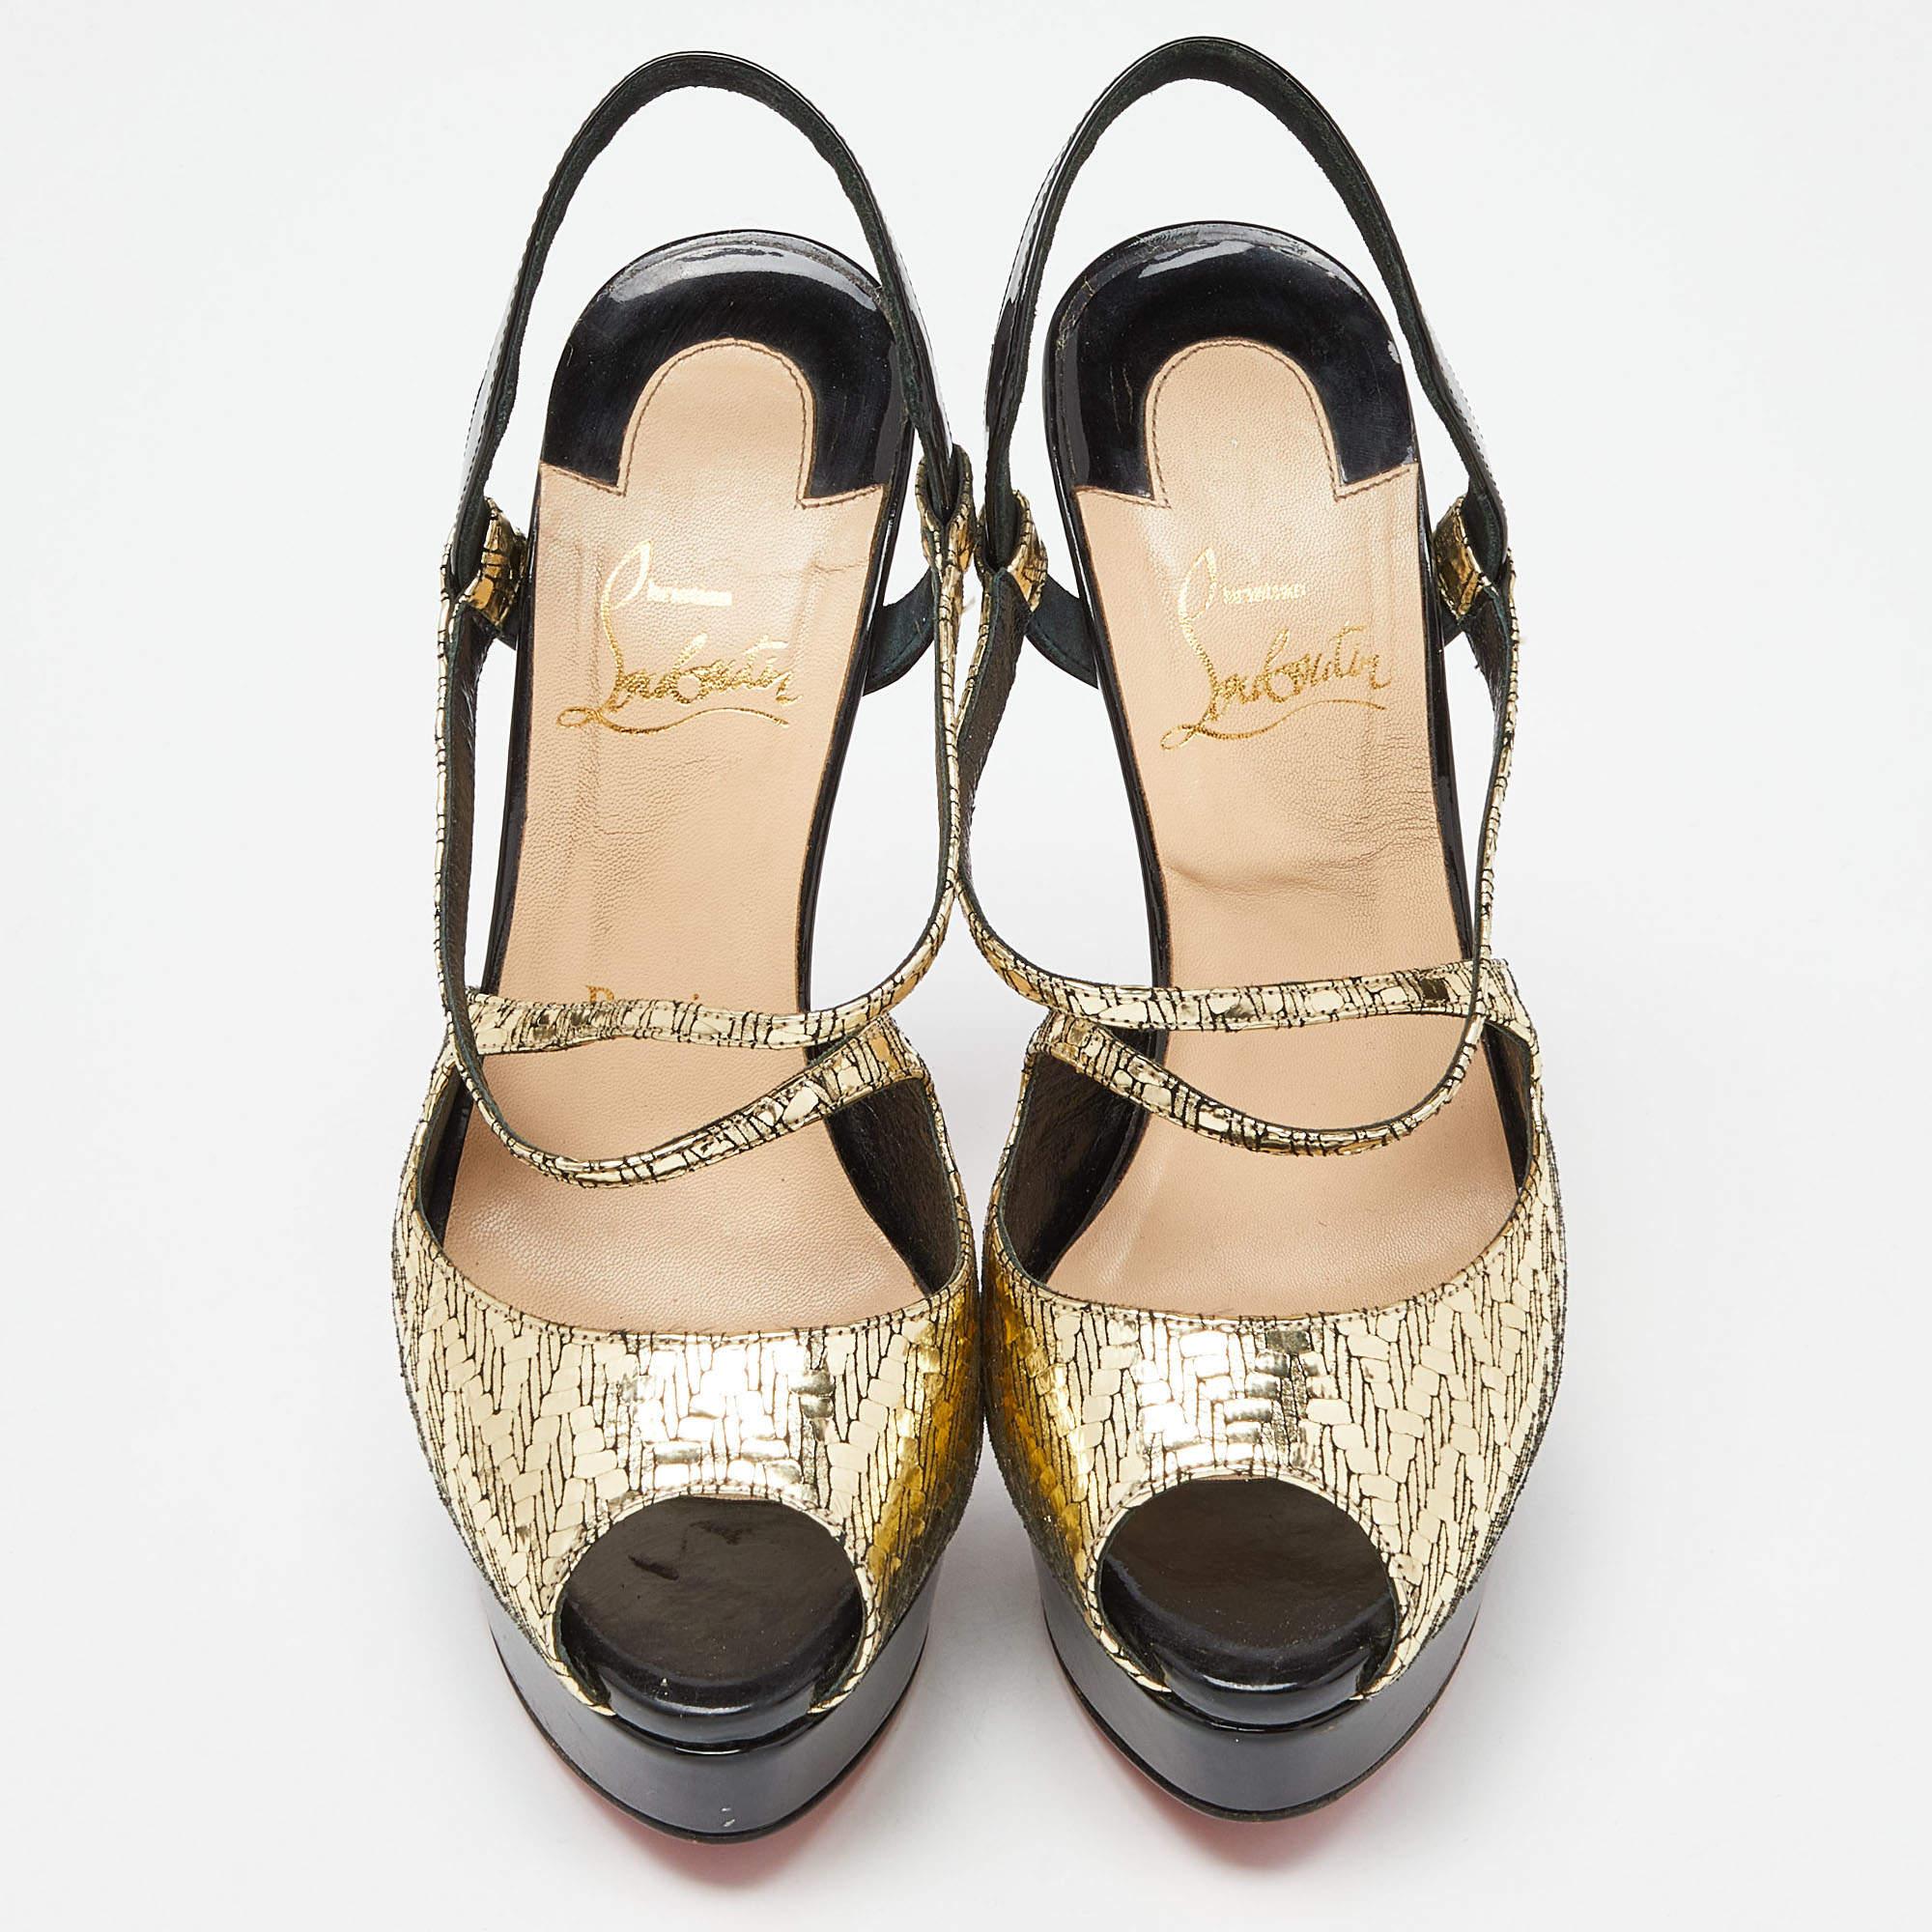 Ces sandales vous donneront l'impression d'être sûre de vous et très élégante. Ces sandales à lanières sont fabriquées en Italie et en cuir verni. Ils sont dotés d'orteils ouverts, de brides croisées, de semelles rouges caractéristiques et de talons